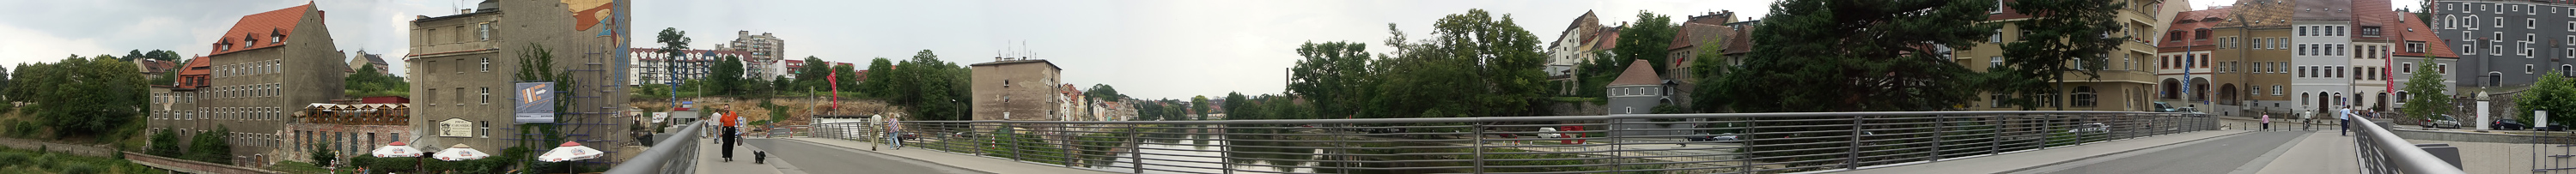 altstadtbrücke